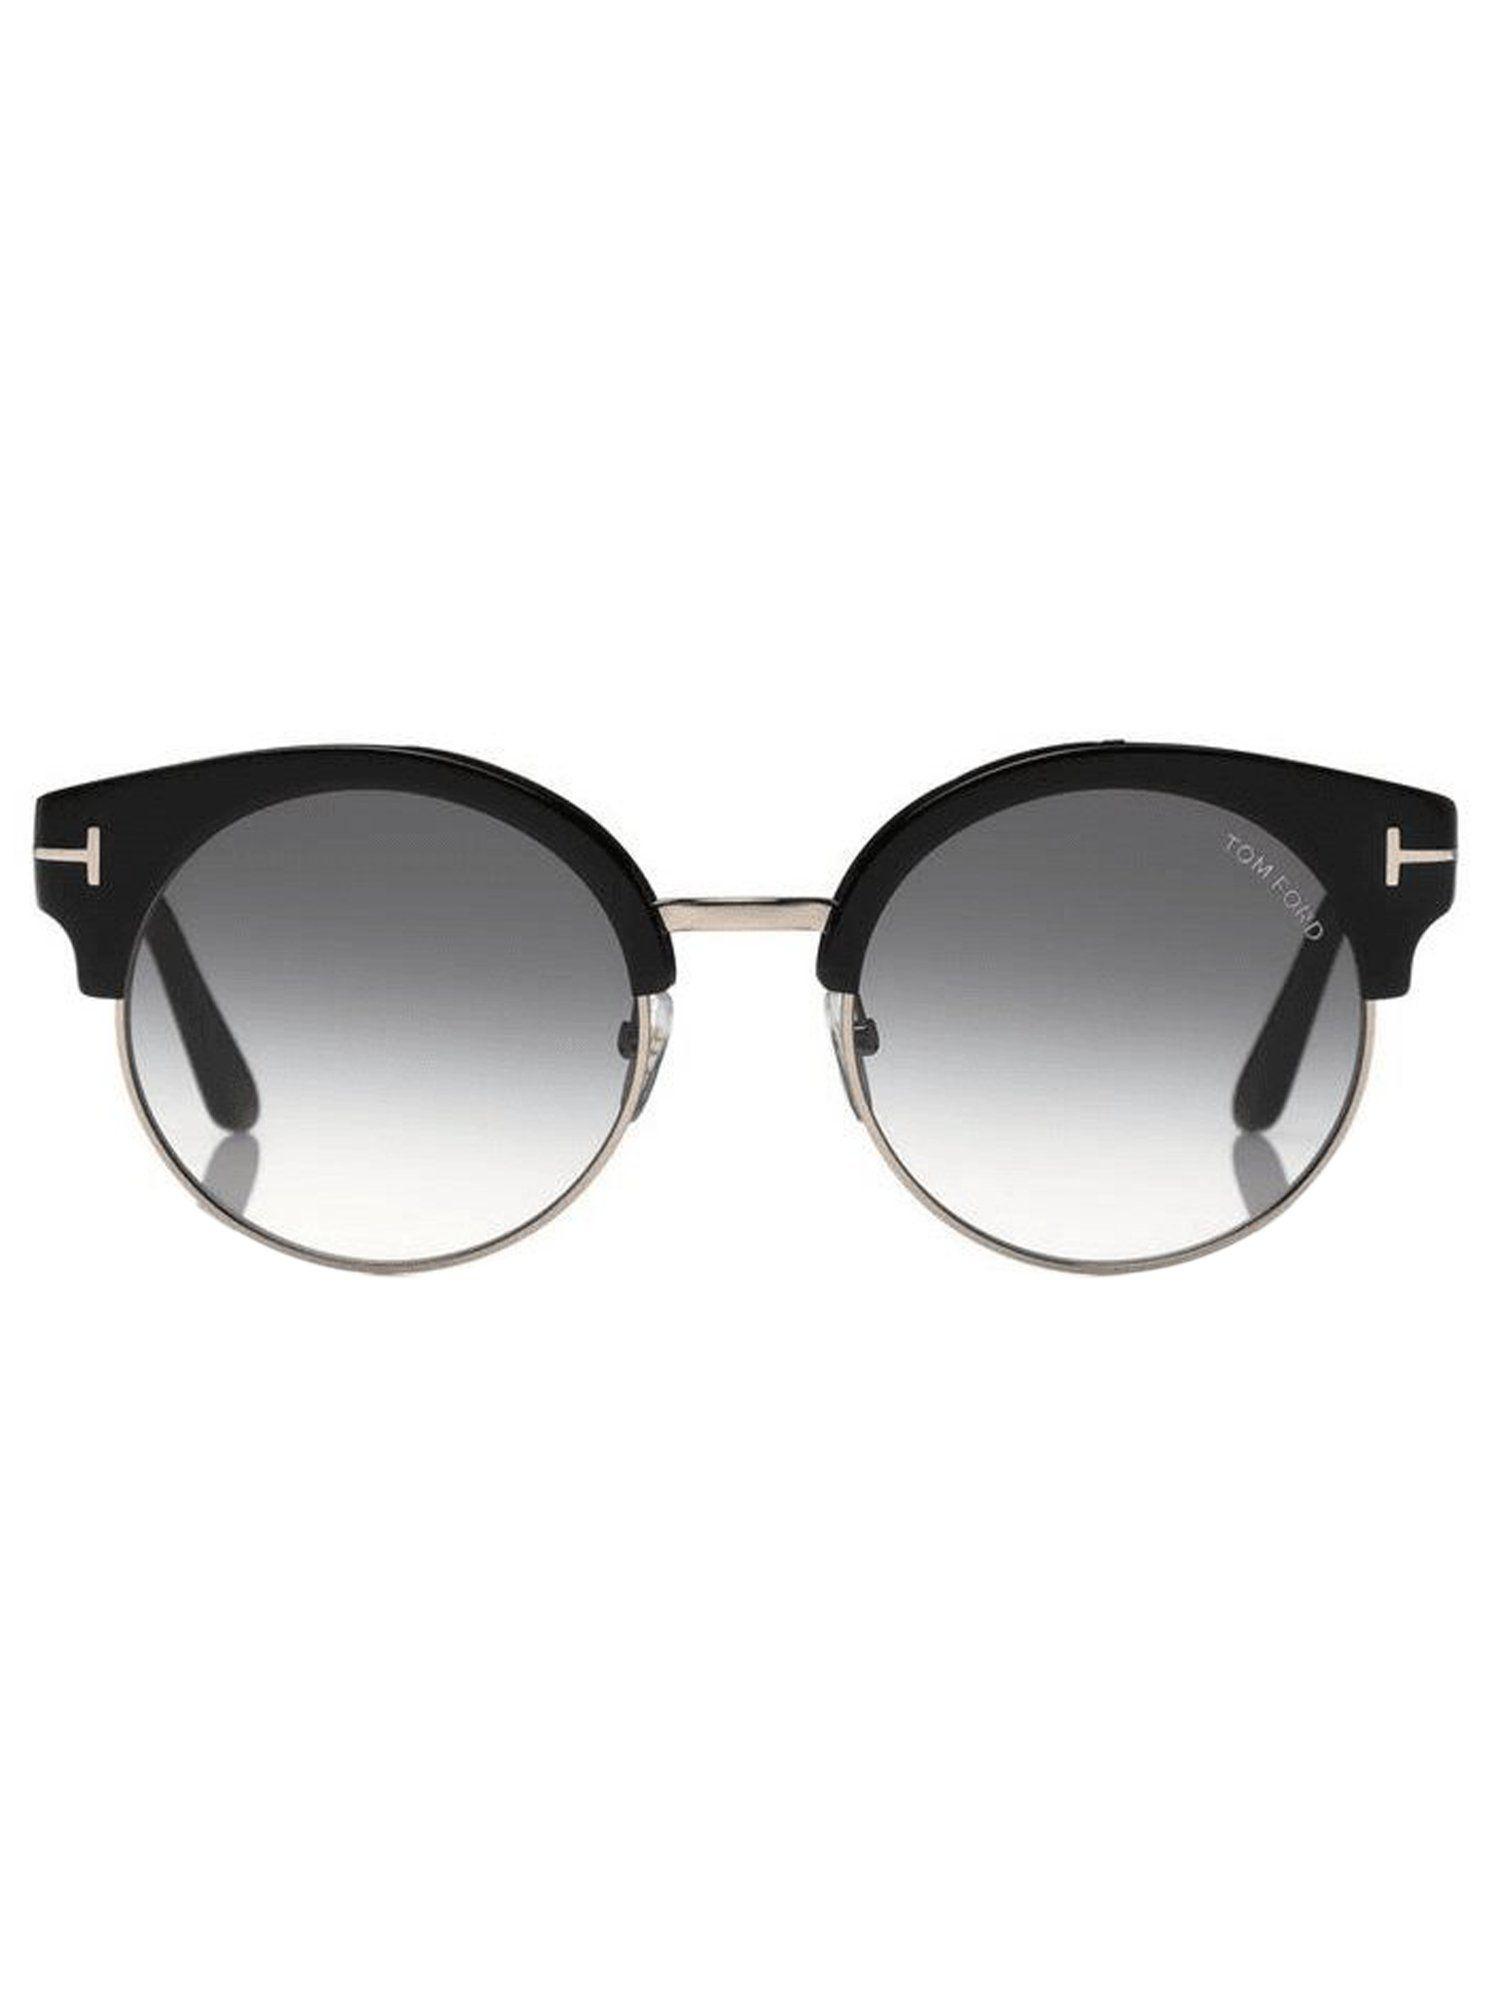 multi-color clubmaster sunglasses - ft0608 54 55x